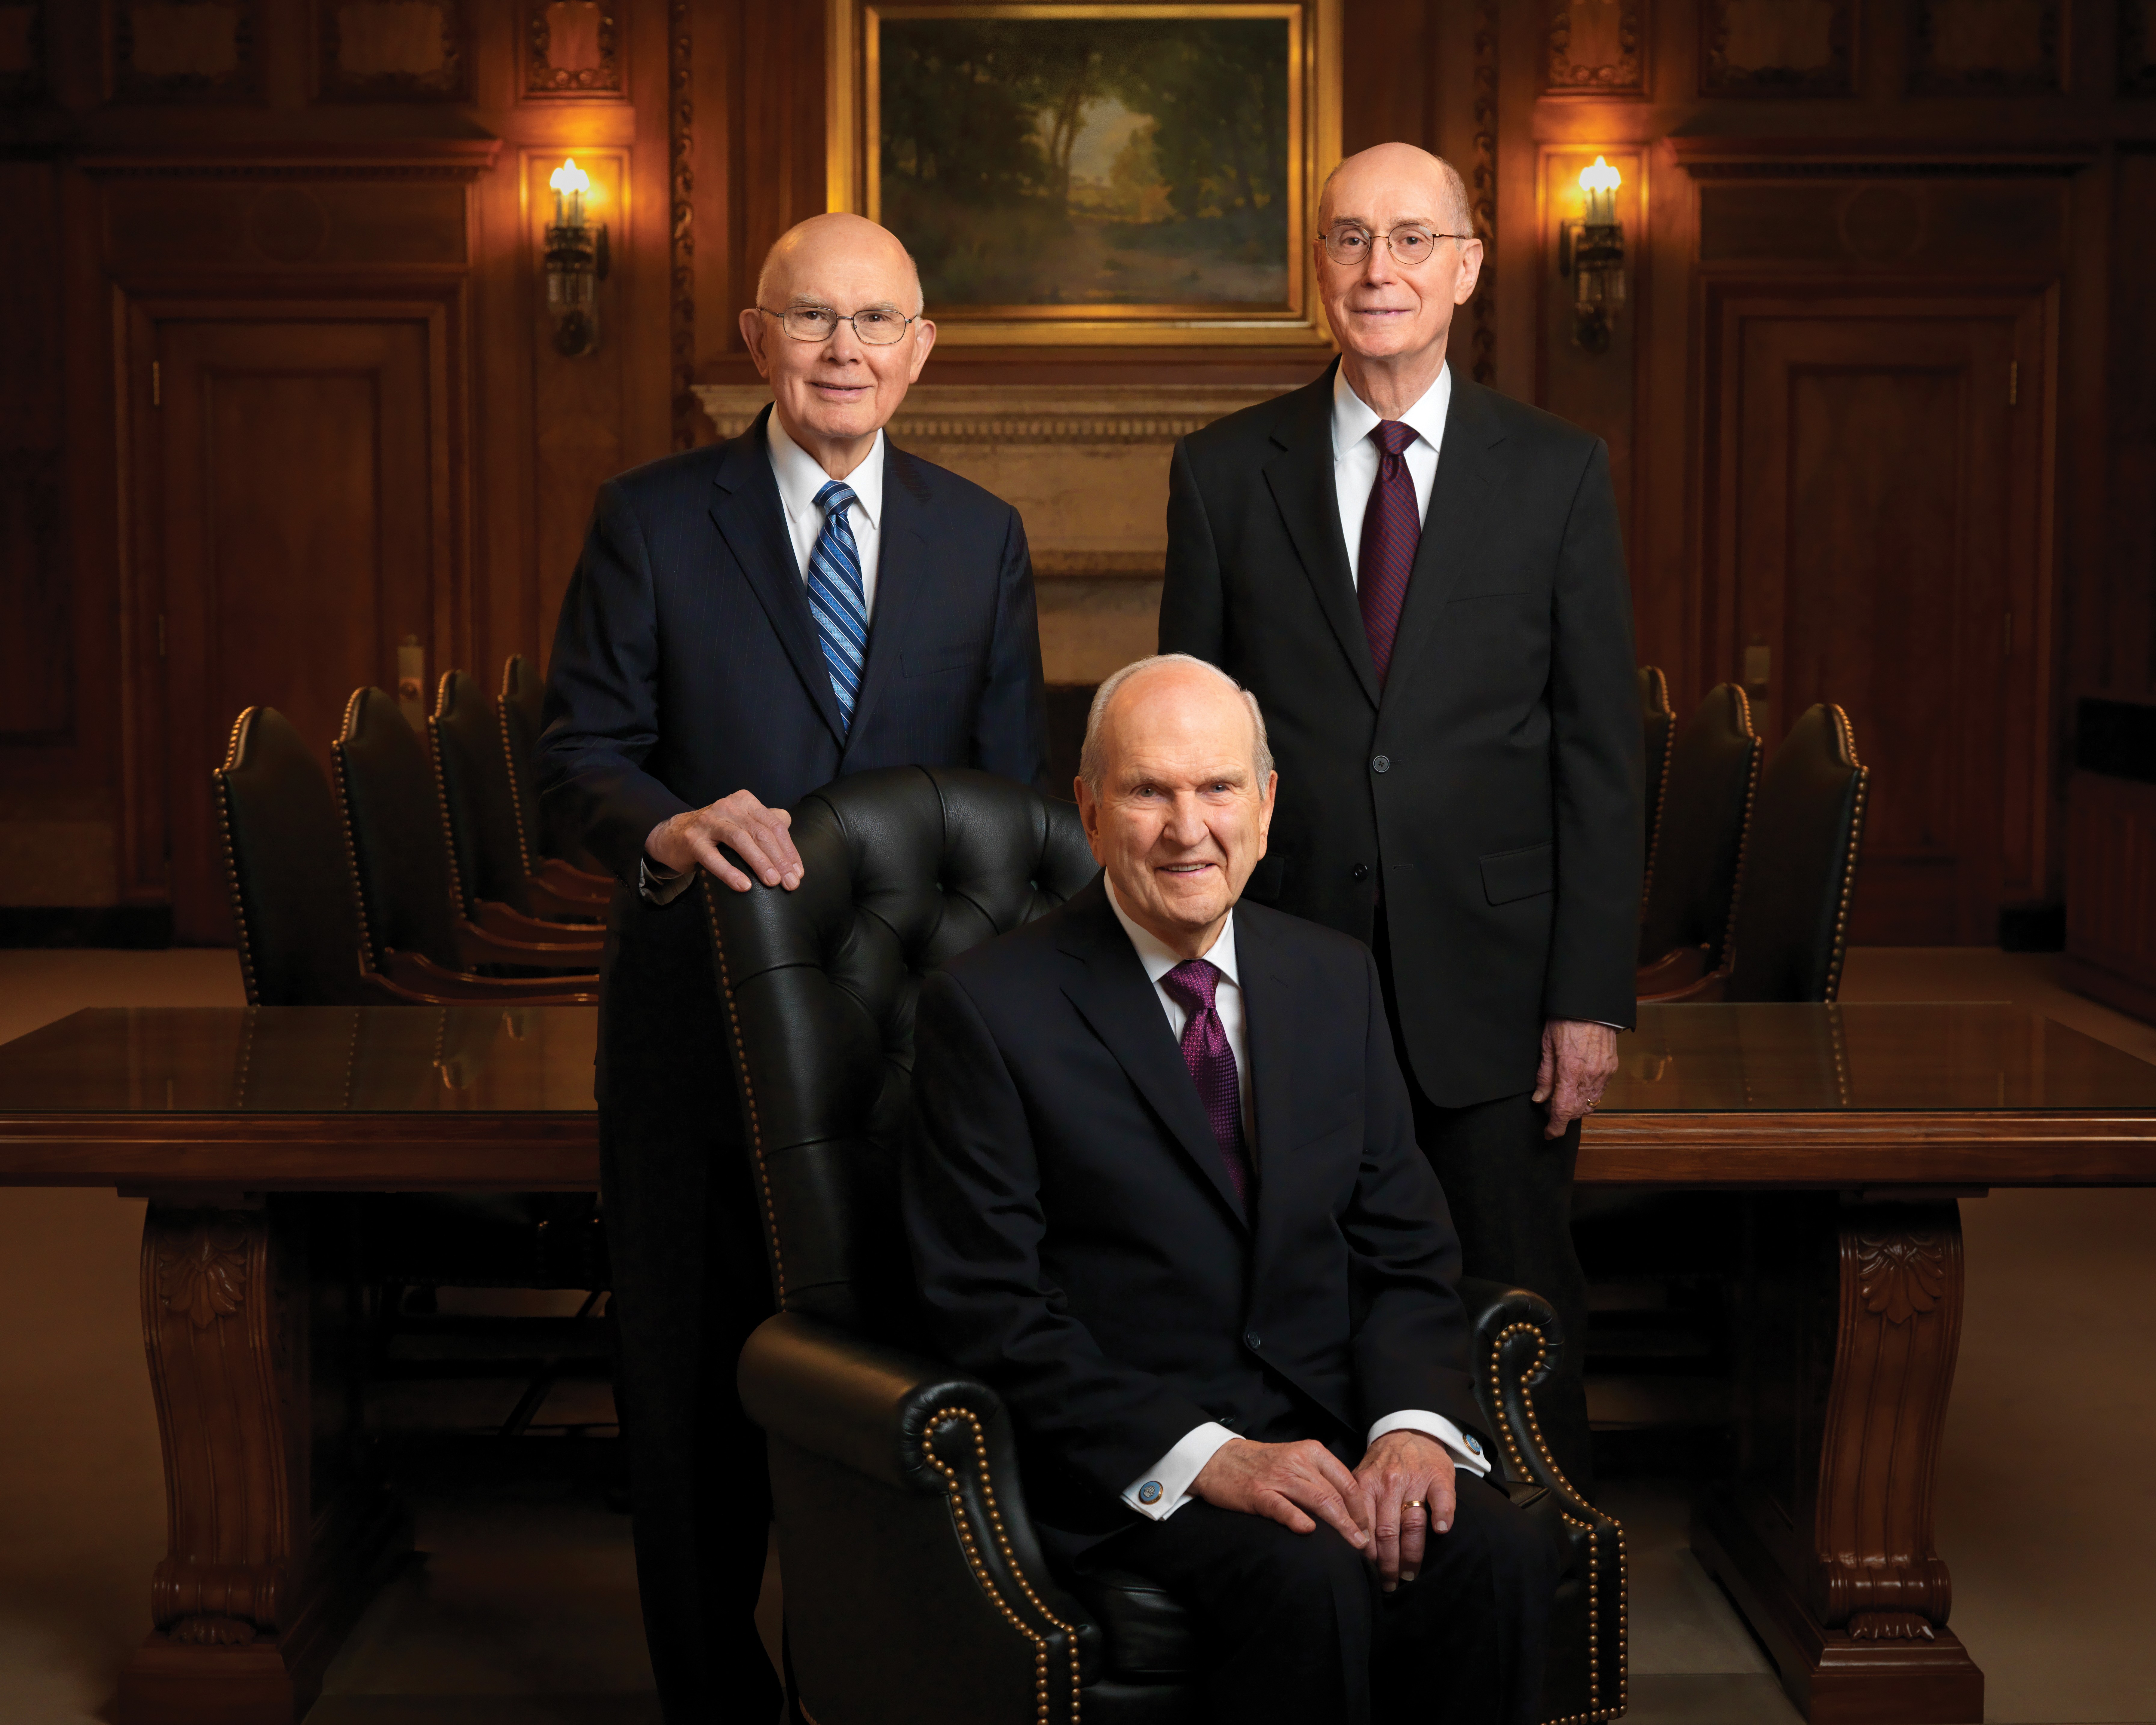 Portrait de la Première Présidence, avec Russell M. Nelson, président, assis sur un fauteuil, et ses conseillers, Dallin H. Oaks et Henry B. Eyring, debout derrière lui.